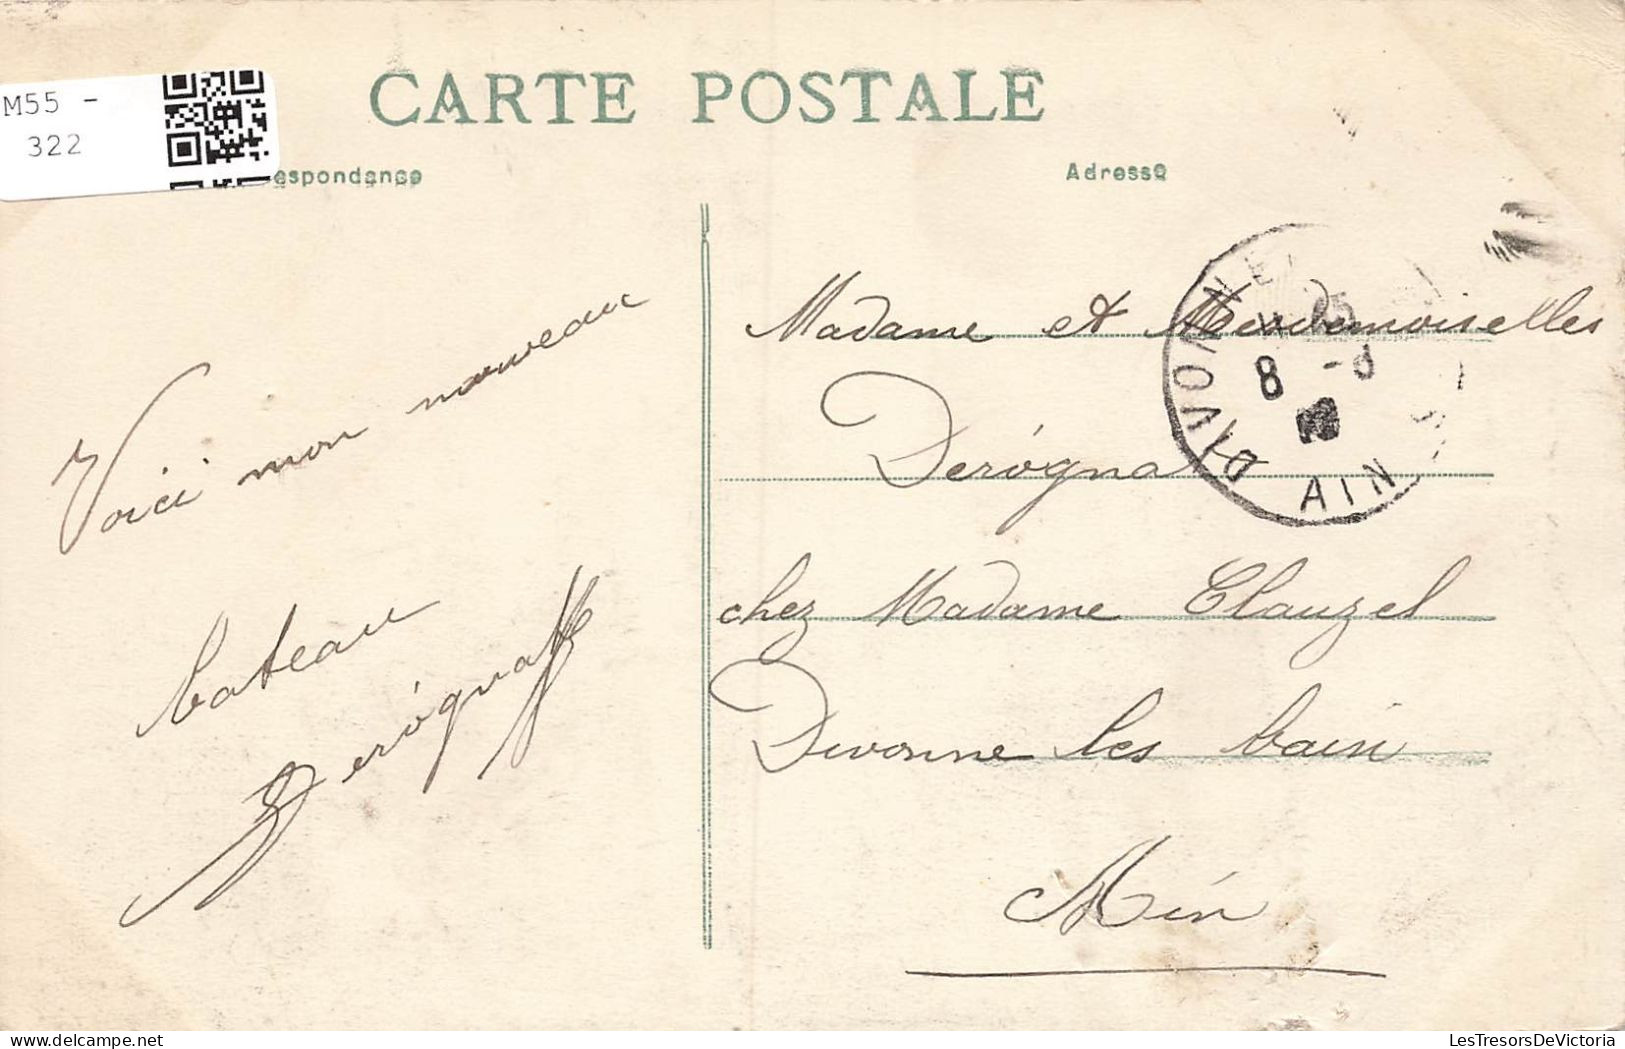 TRANSPORTS - Bateaux - Guerre - Cherbourg - Le "Desaix" Dans L'Arsenal - Port - Carte Postale Ancienne - Guerra